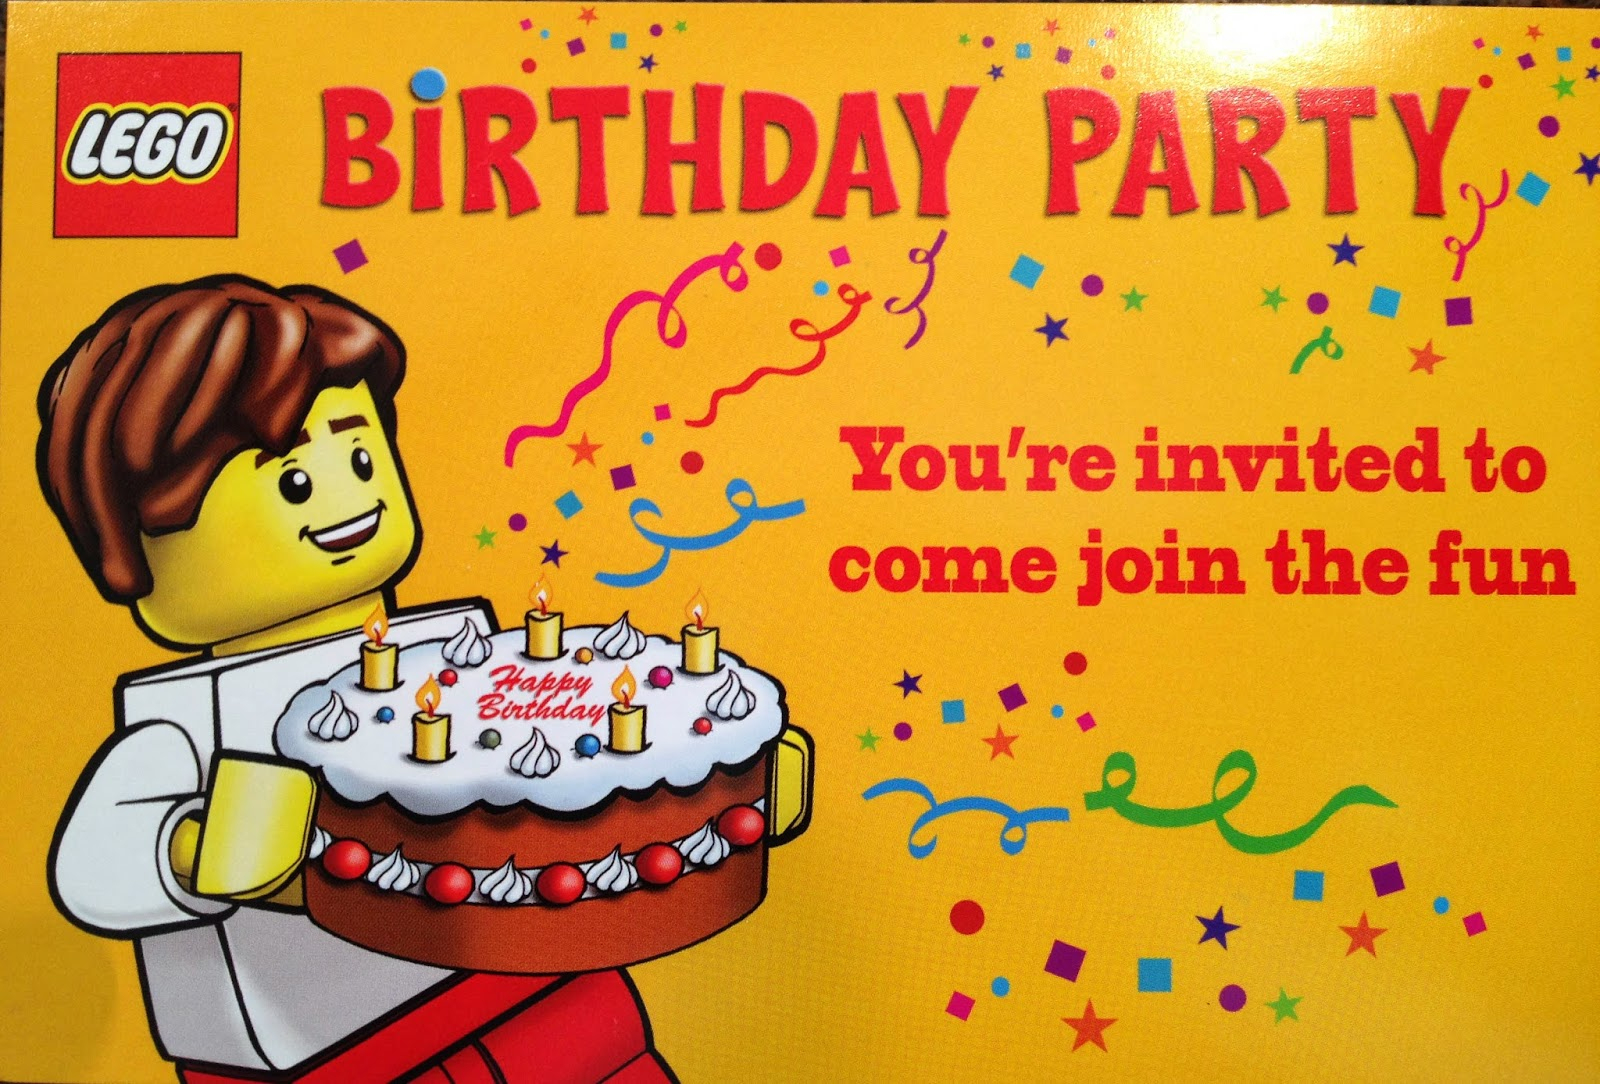 Lego Party Invitations Lego Party Invitations A Beauty Party - Lego Party Invitations Printable Free